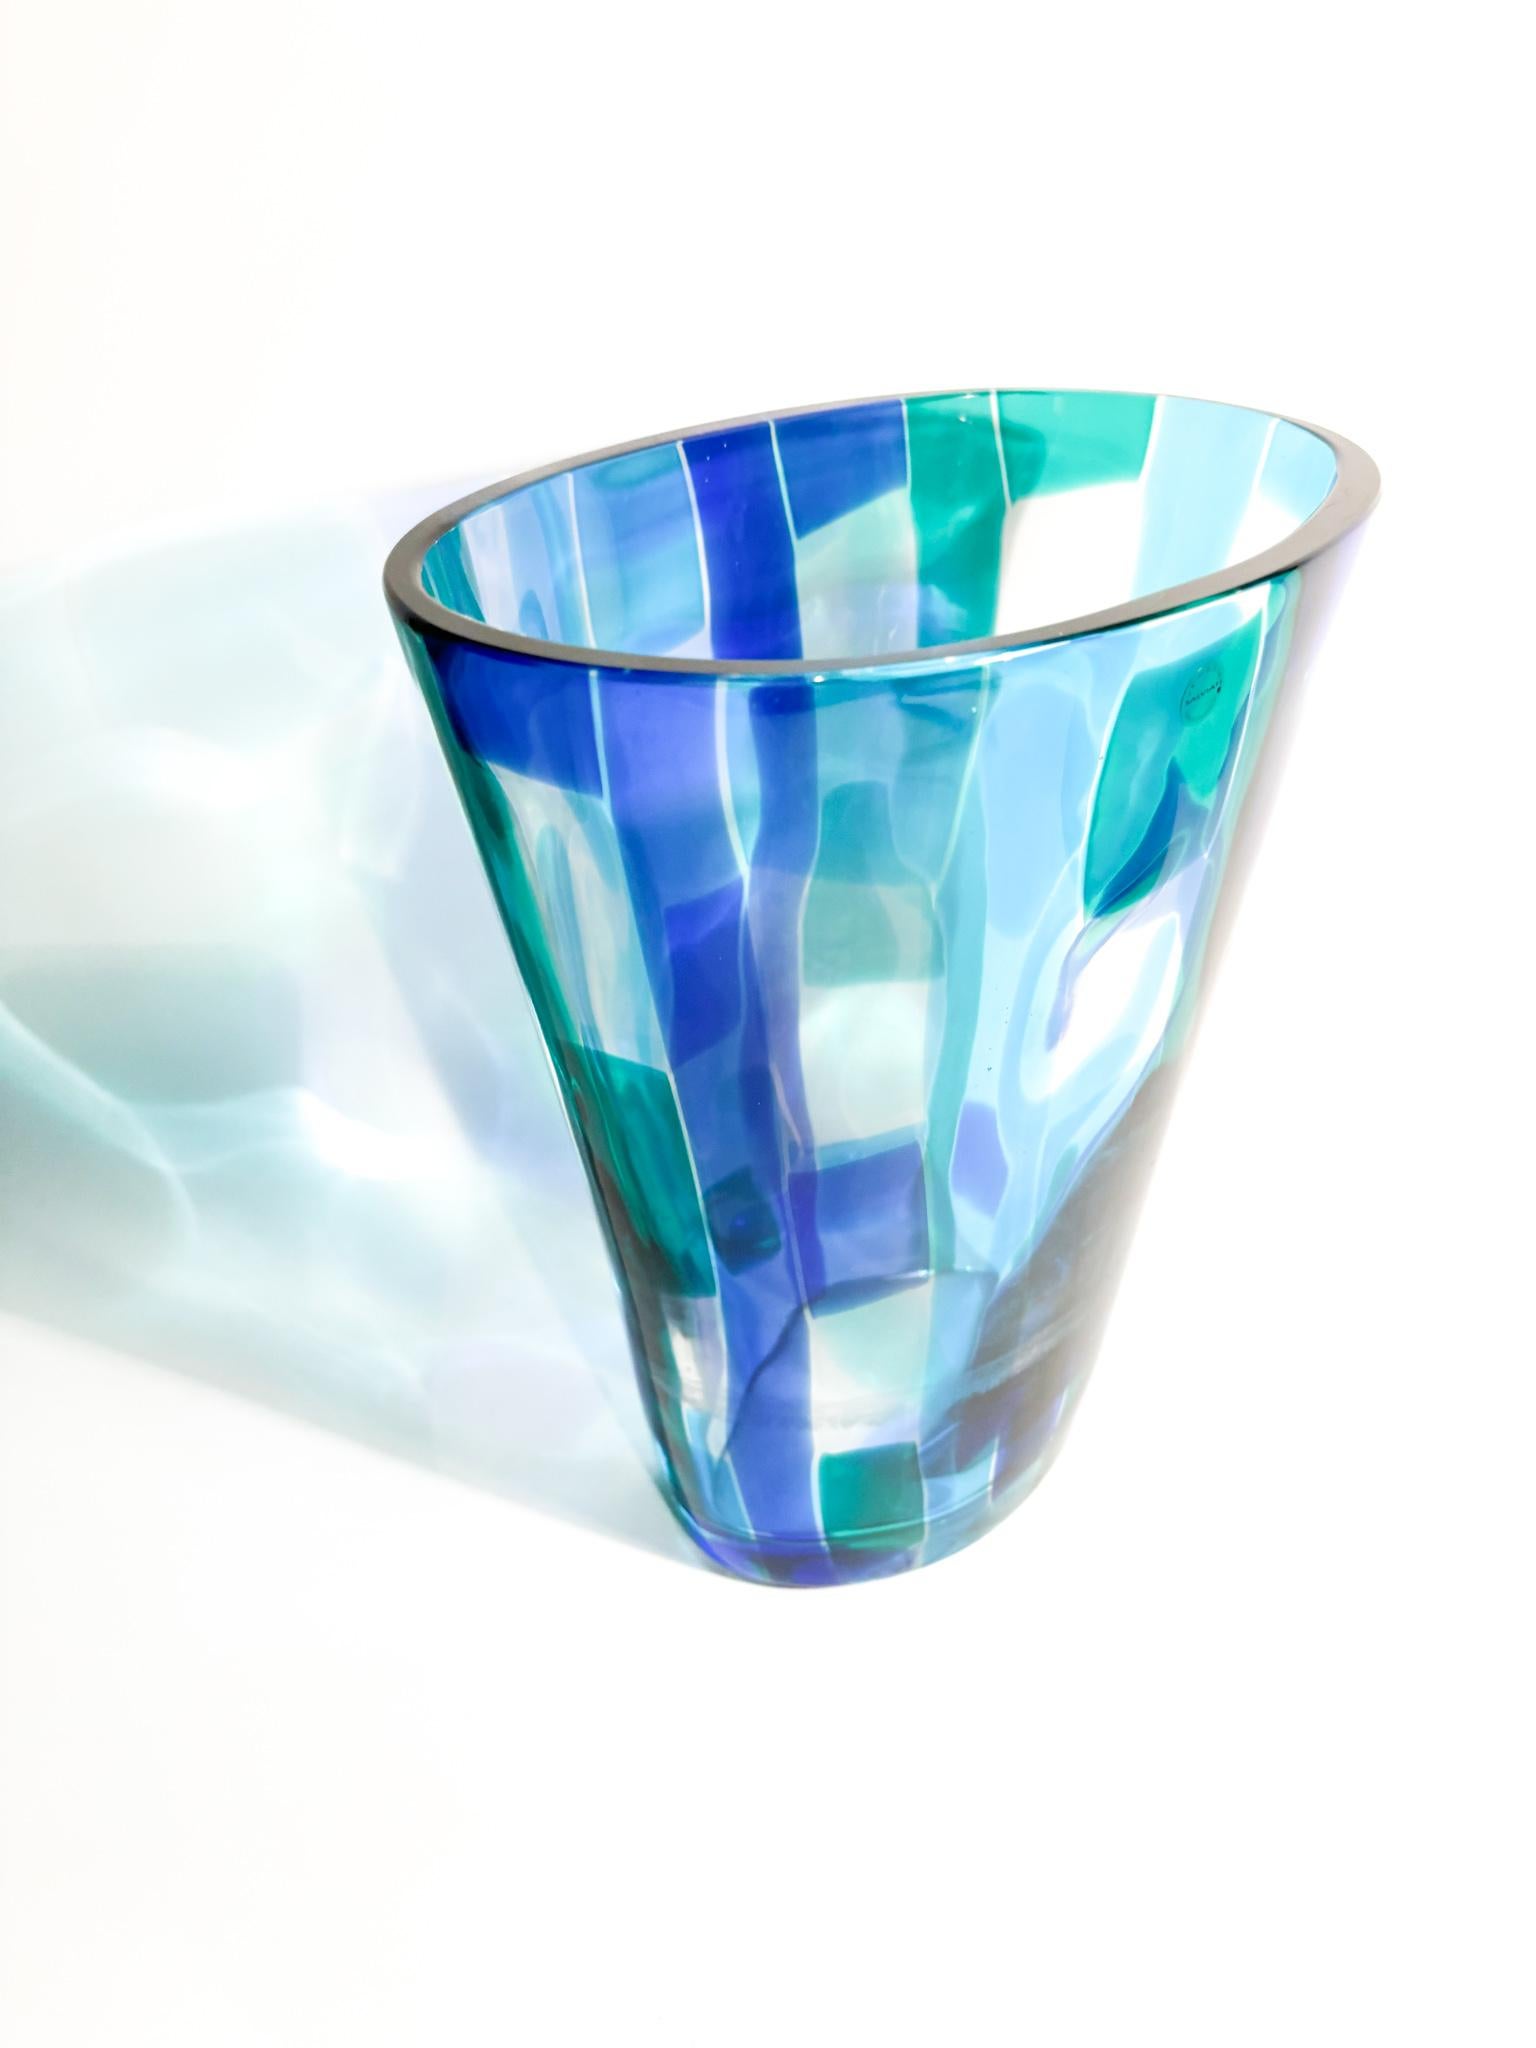 Salviati Murano Multicolored Glass Vase Madras model 1997 For Sale 2